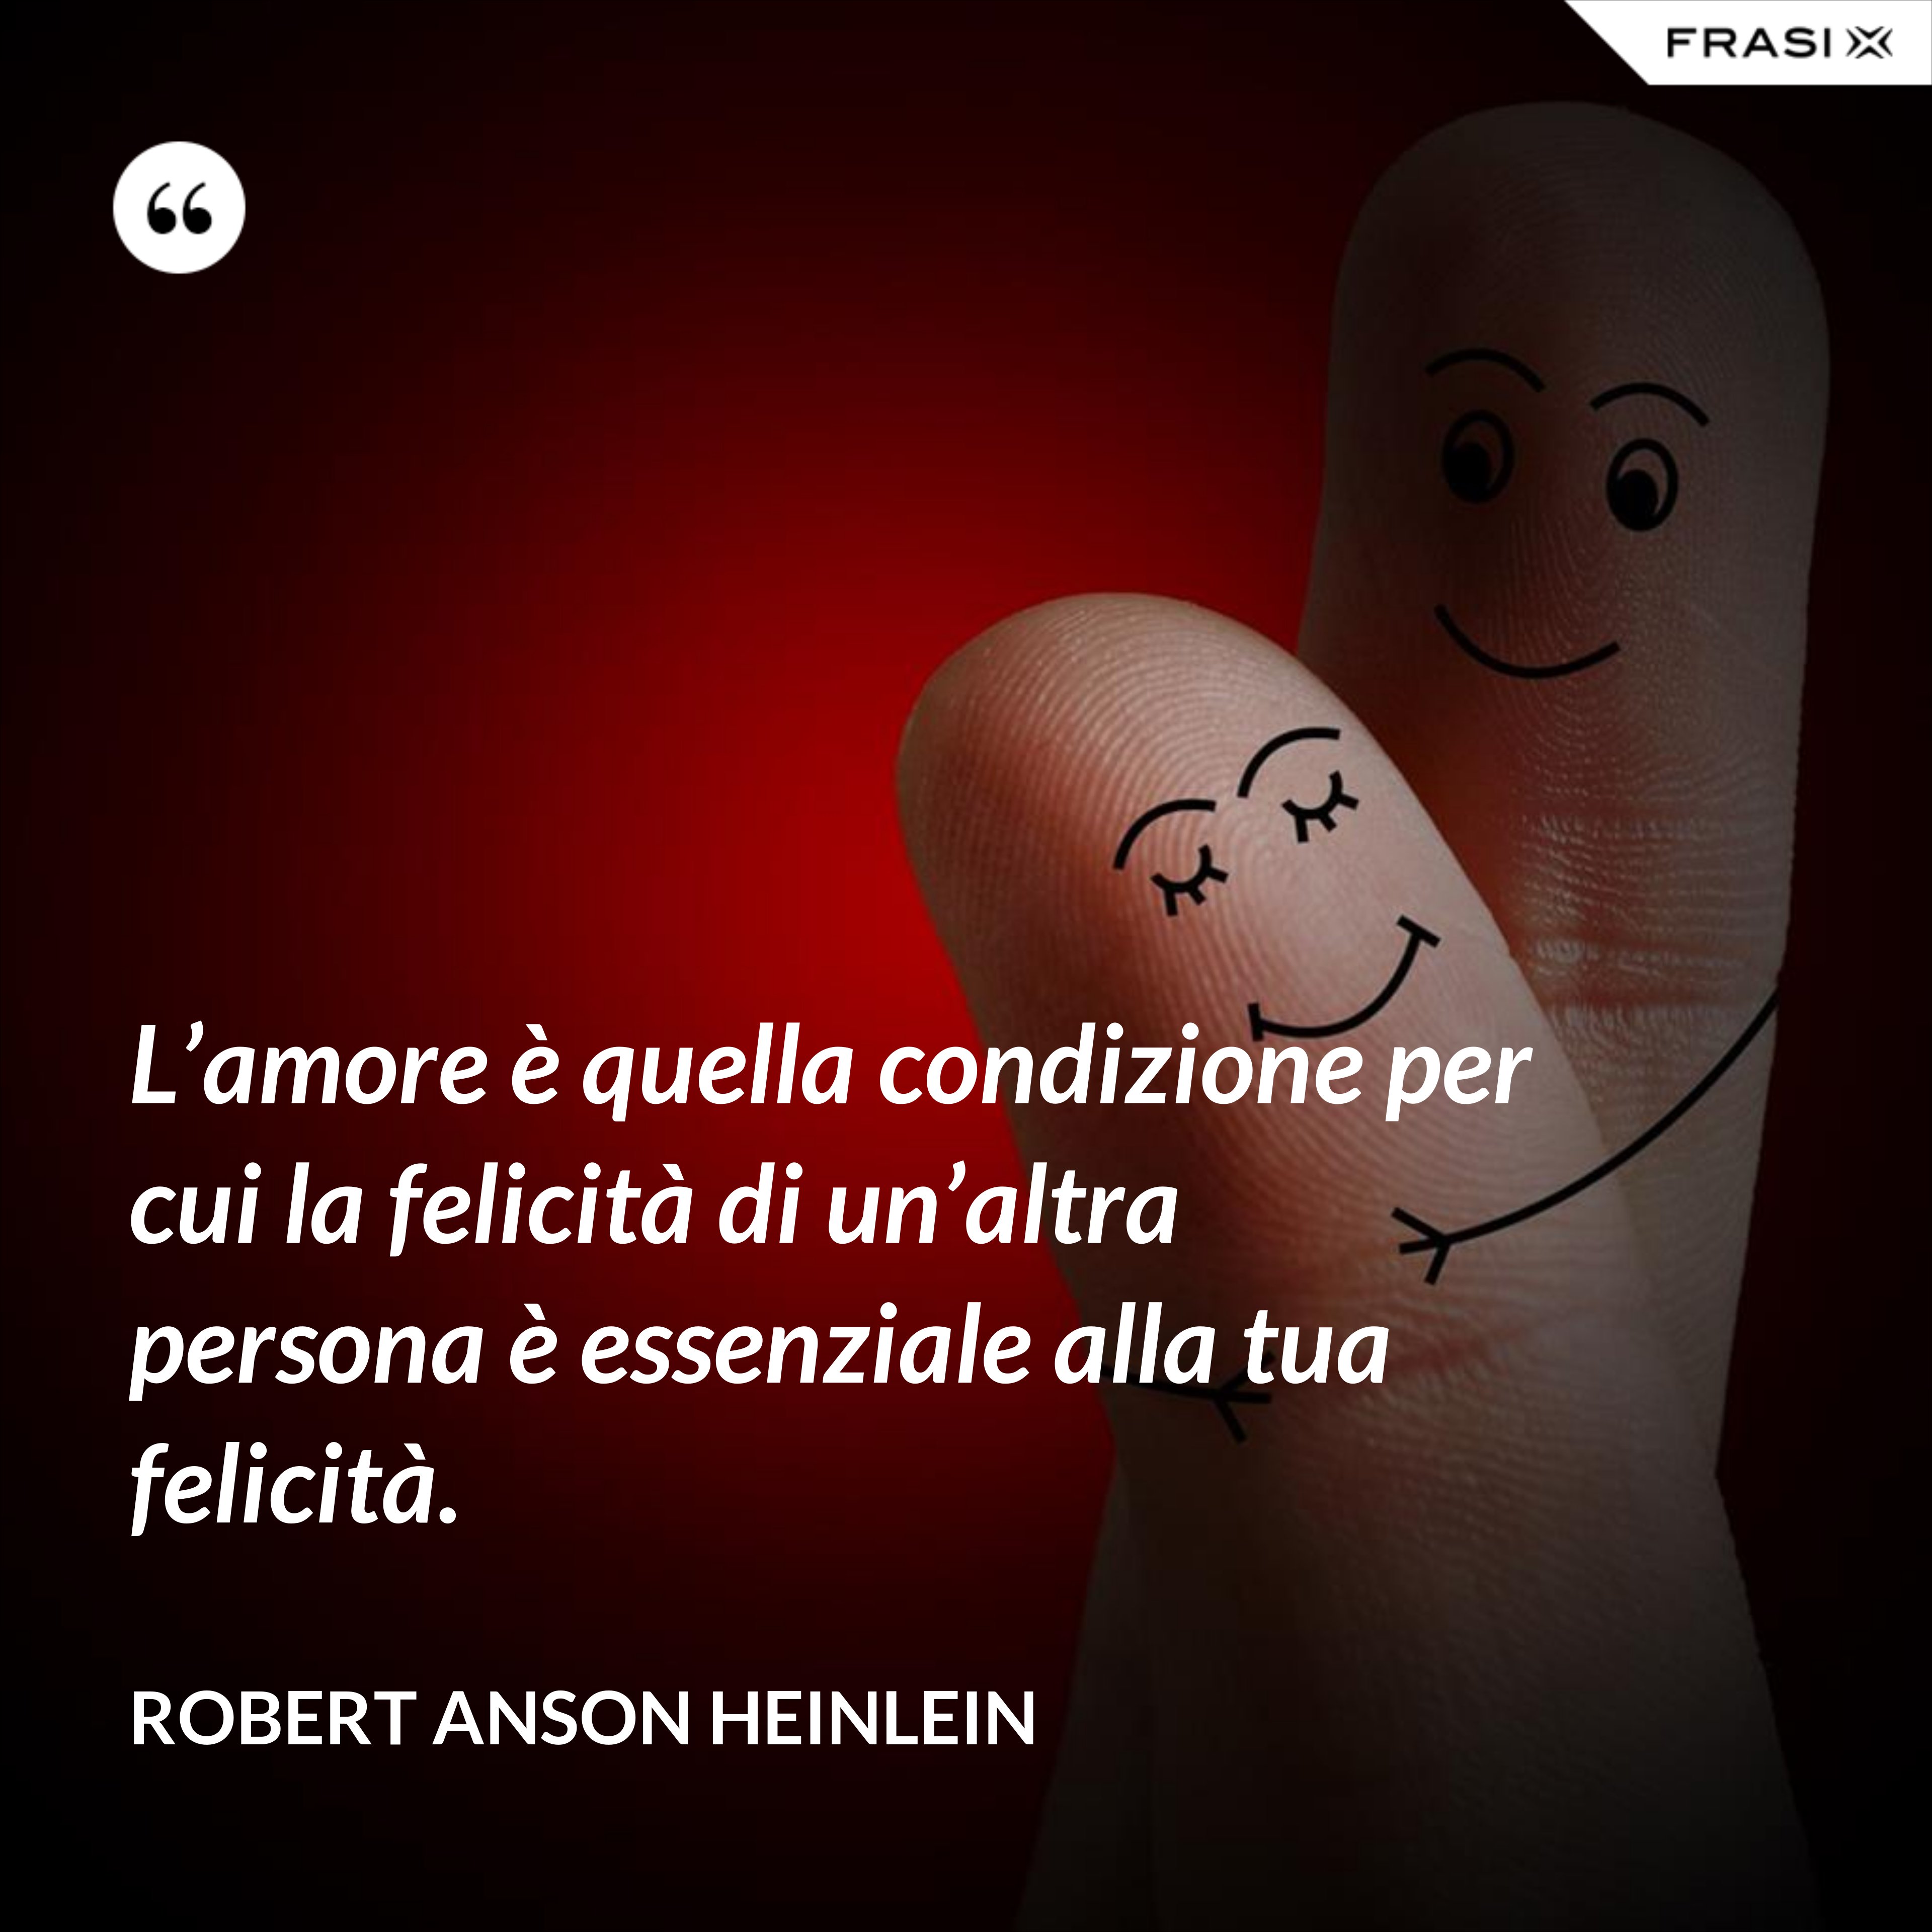 L’amore è quella condizione per cui la felicità di un’altra persona è essenziale alla tua felicità. - Robert Anson Heinlein